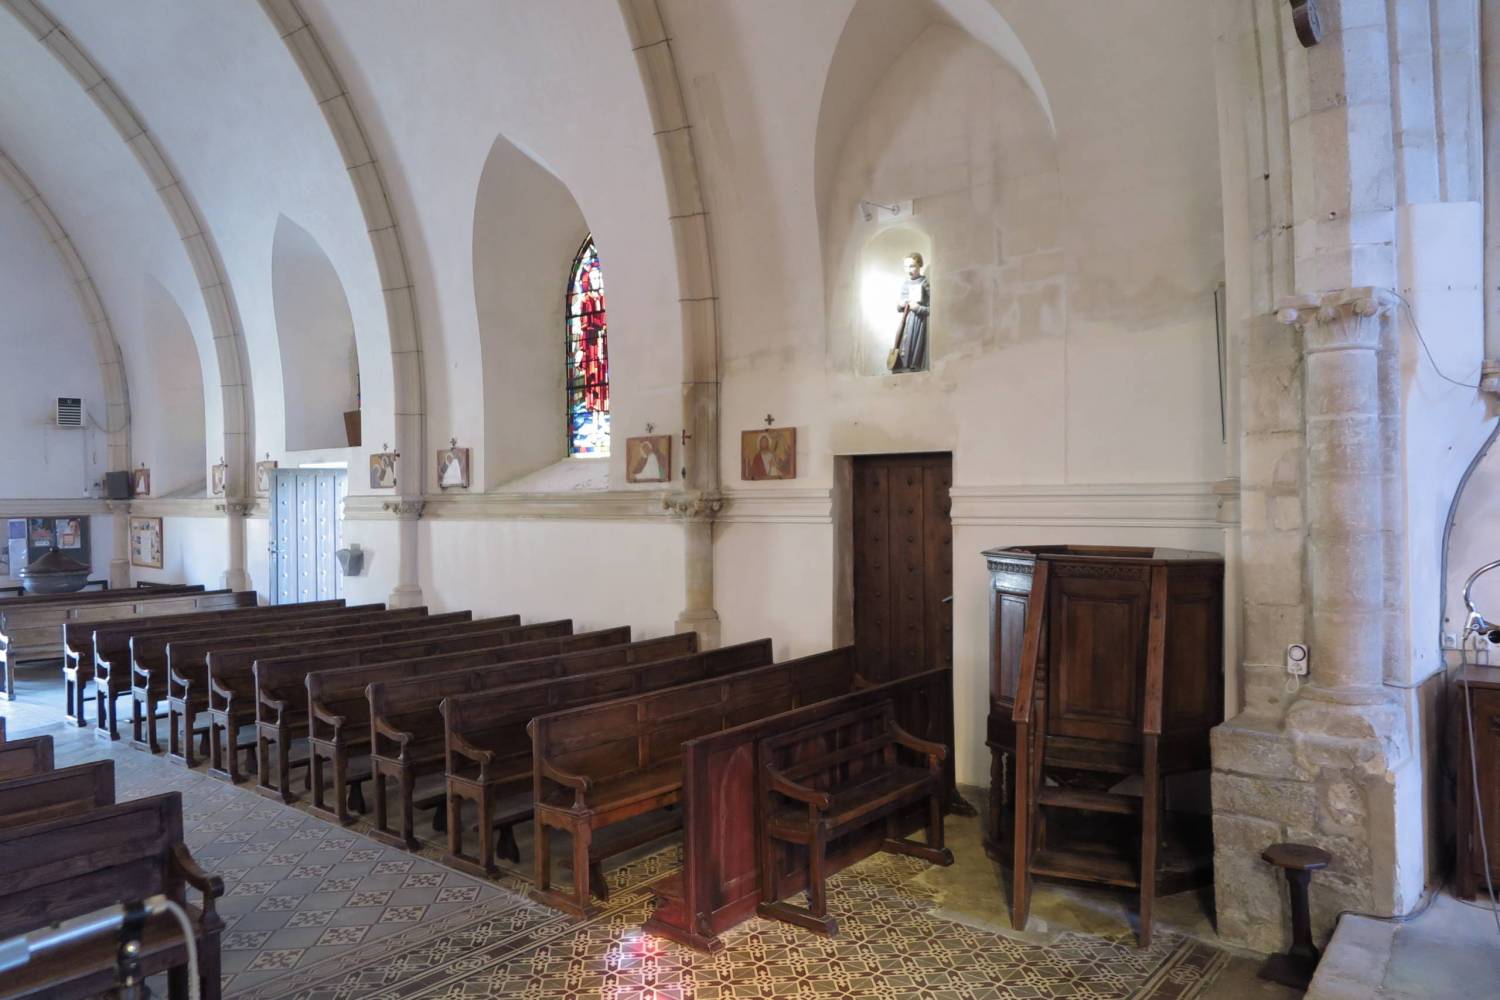 Benoistville (50) - Eglise Saint-Pierre - La Sauvegarde de l'Art Français